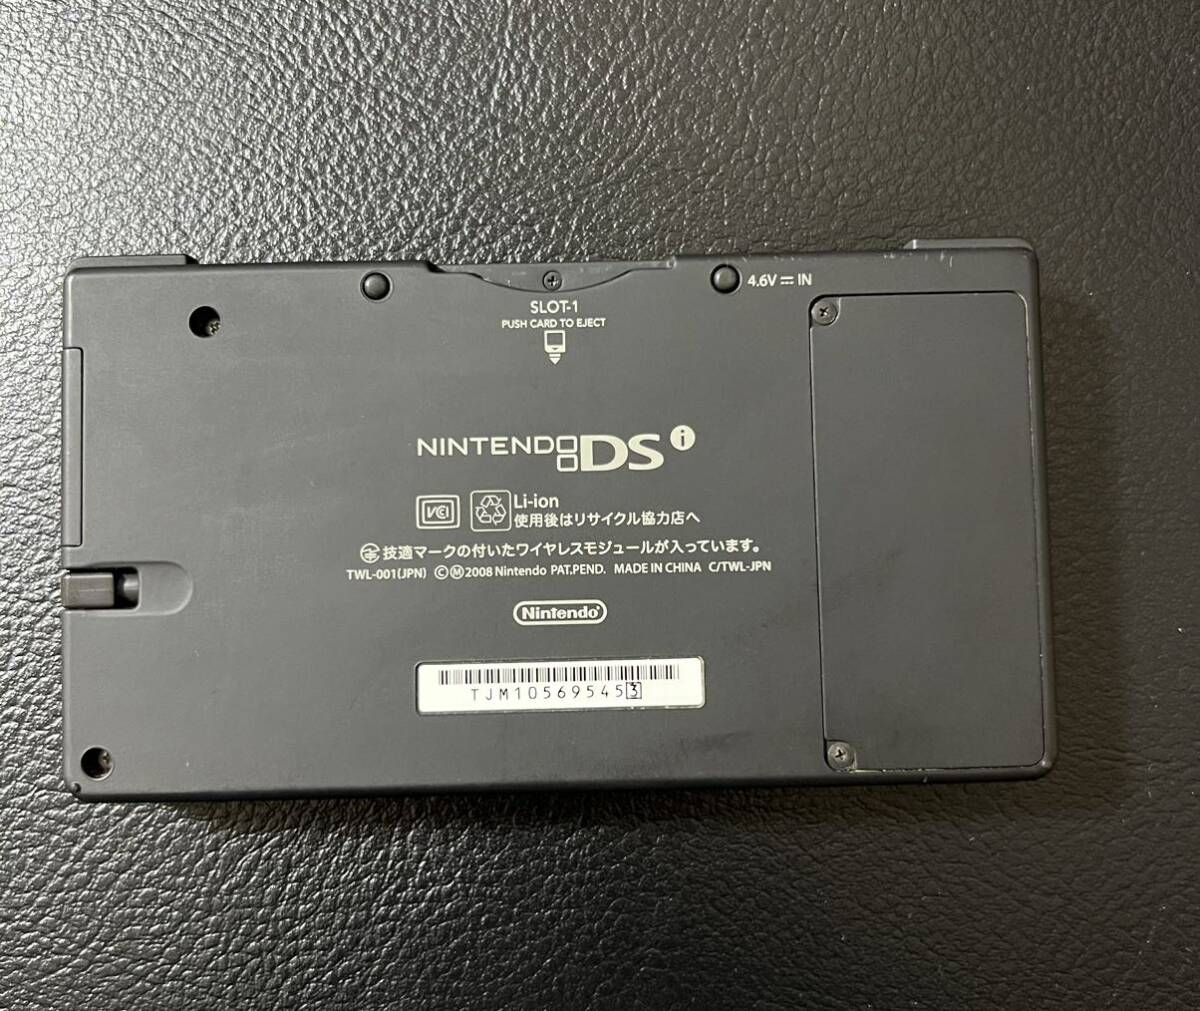  человек Nintendo DSi SaGa SAGA 20th корпус только рабочее состояние подтверждено * SAGA 20 anniversary commemoration ограниченная модель 